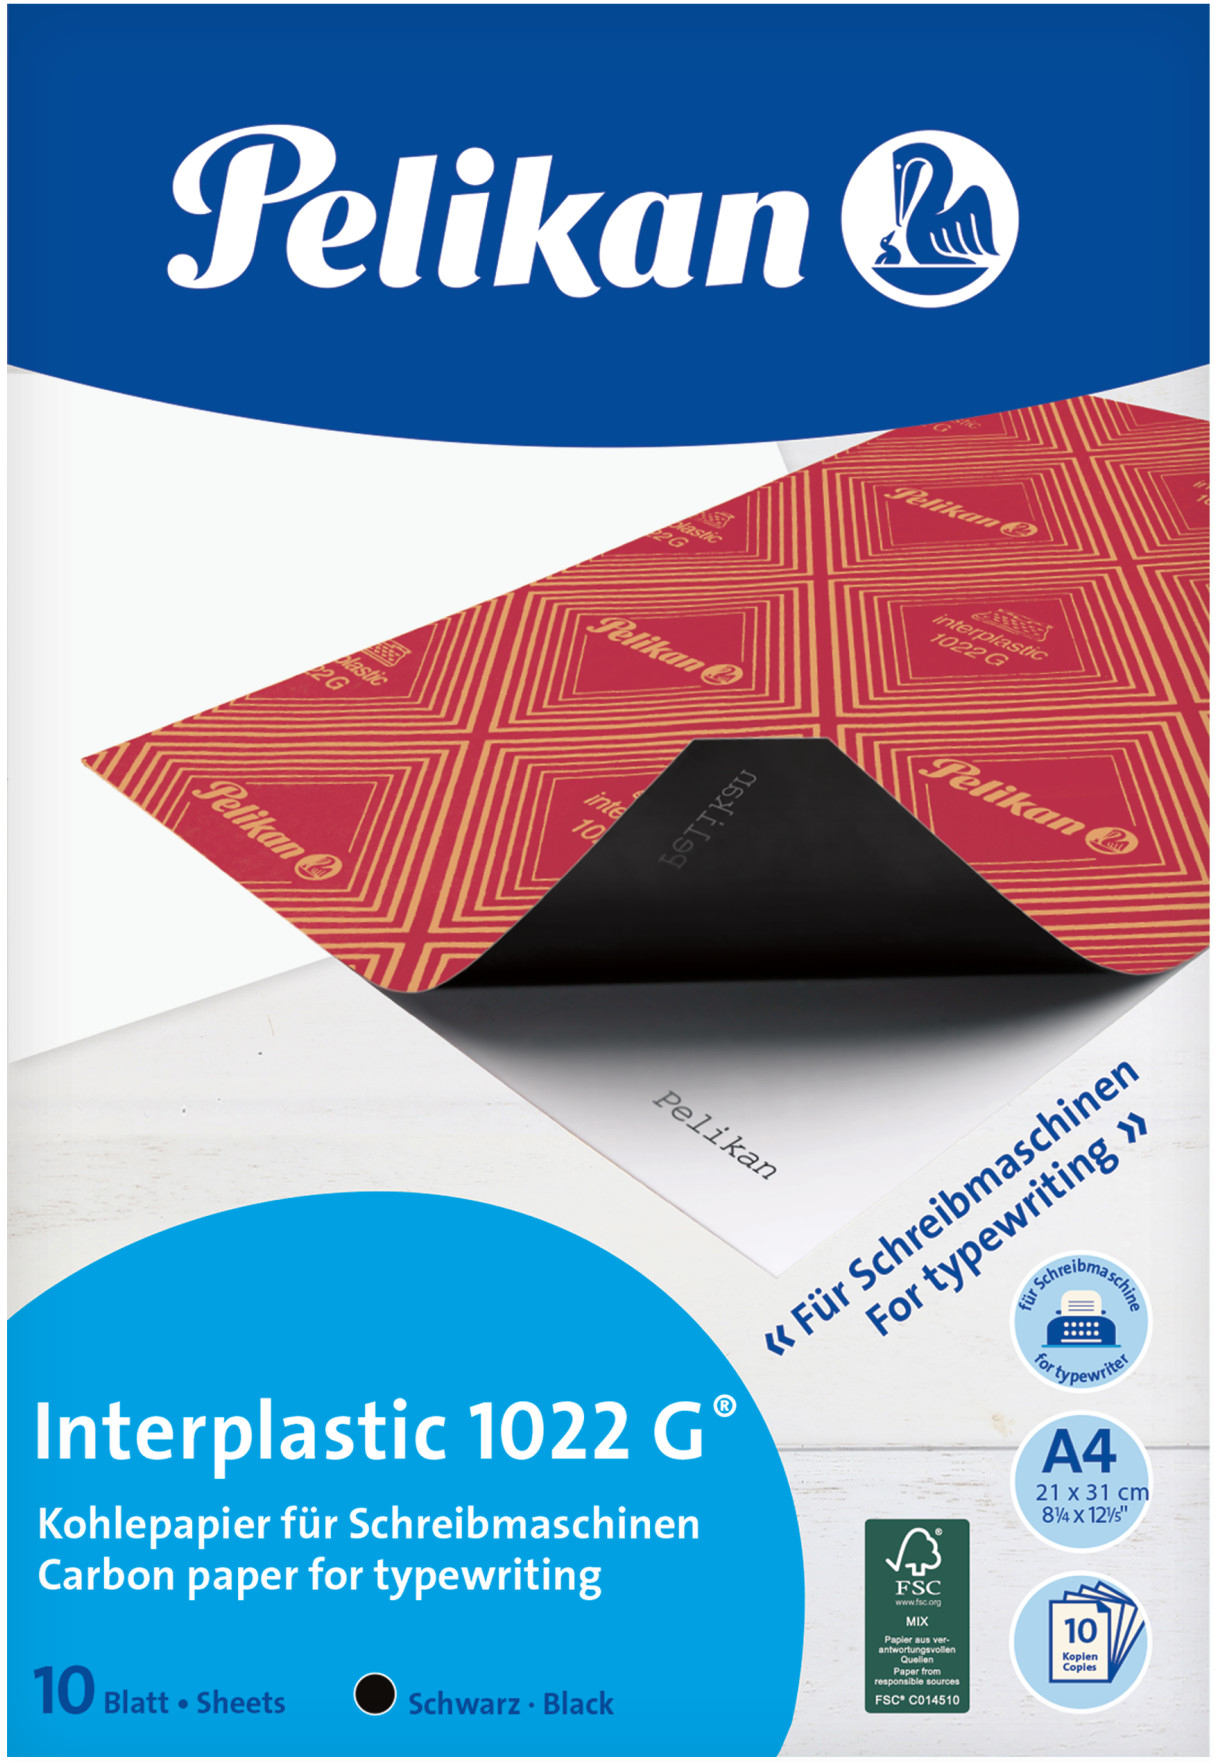 PELIKAN Papier de carbone 1022G A4 401026 entre plastique 10 feuilles